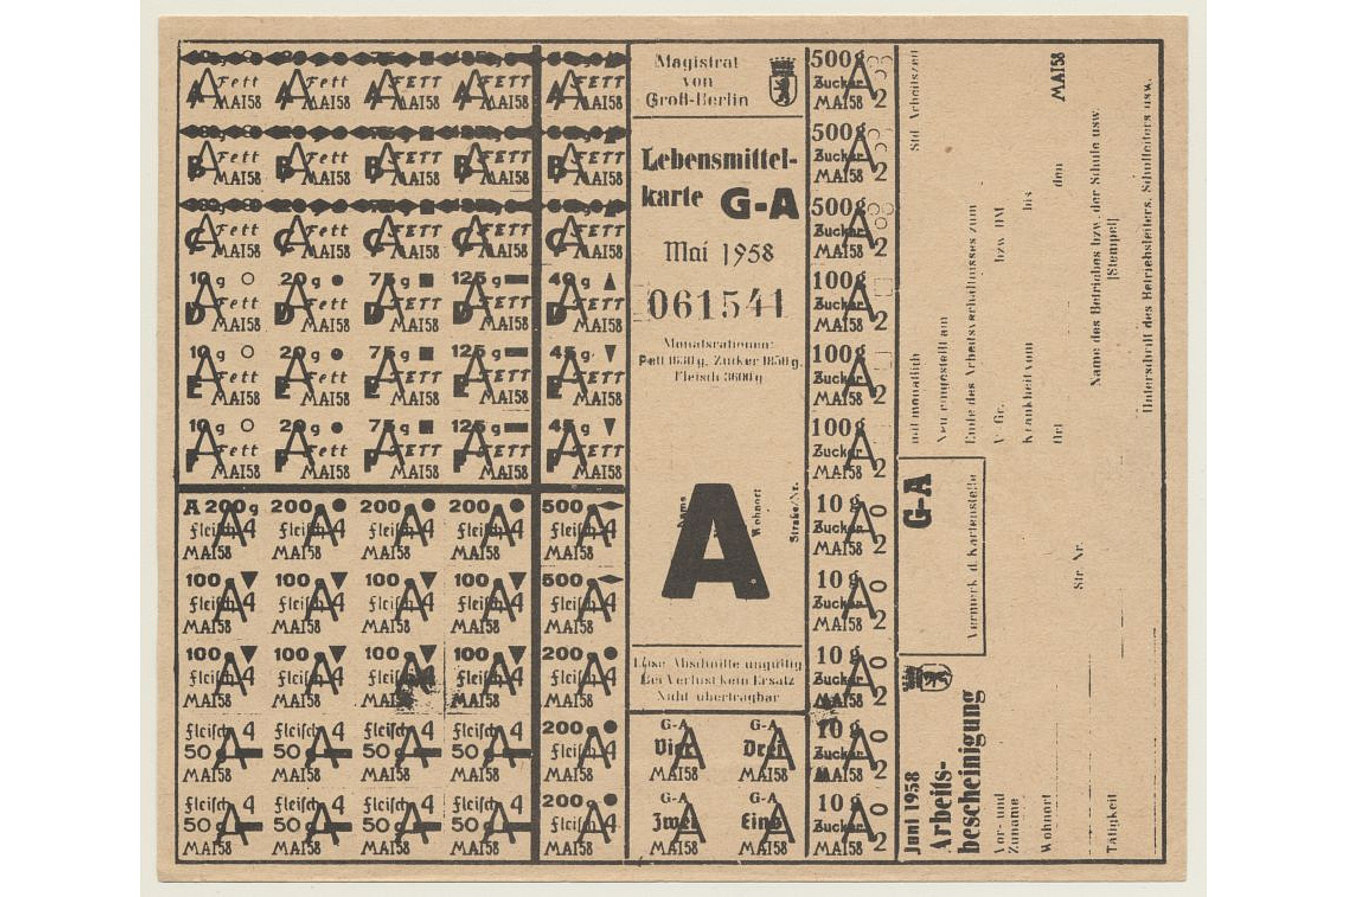 Lebensmittelkarte mit dem Aufdruck 'Magistrat von Groß Berlin Lebensmittelkarte G-A Mai 1958' und Aufdruck der einzelnen Lebensmittel mit jeweiliger Mengenangabe